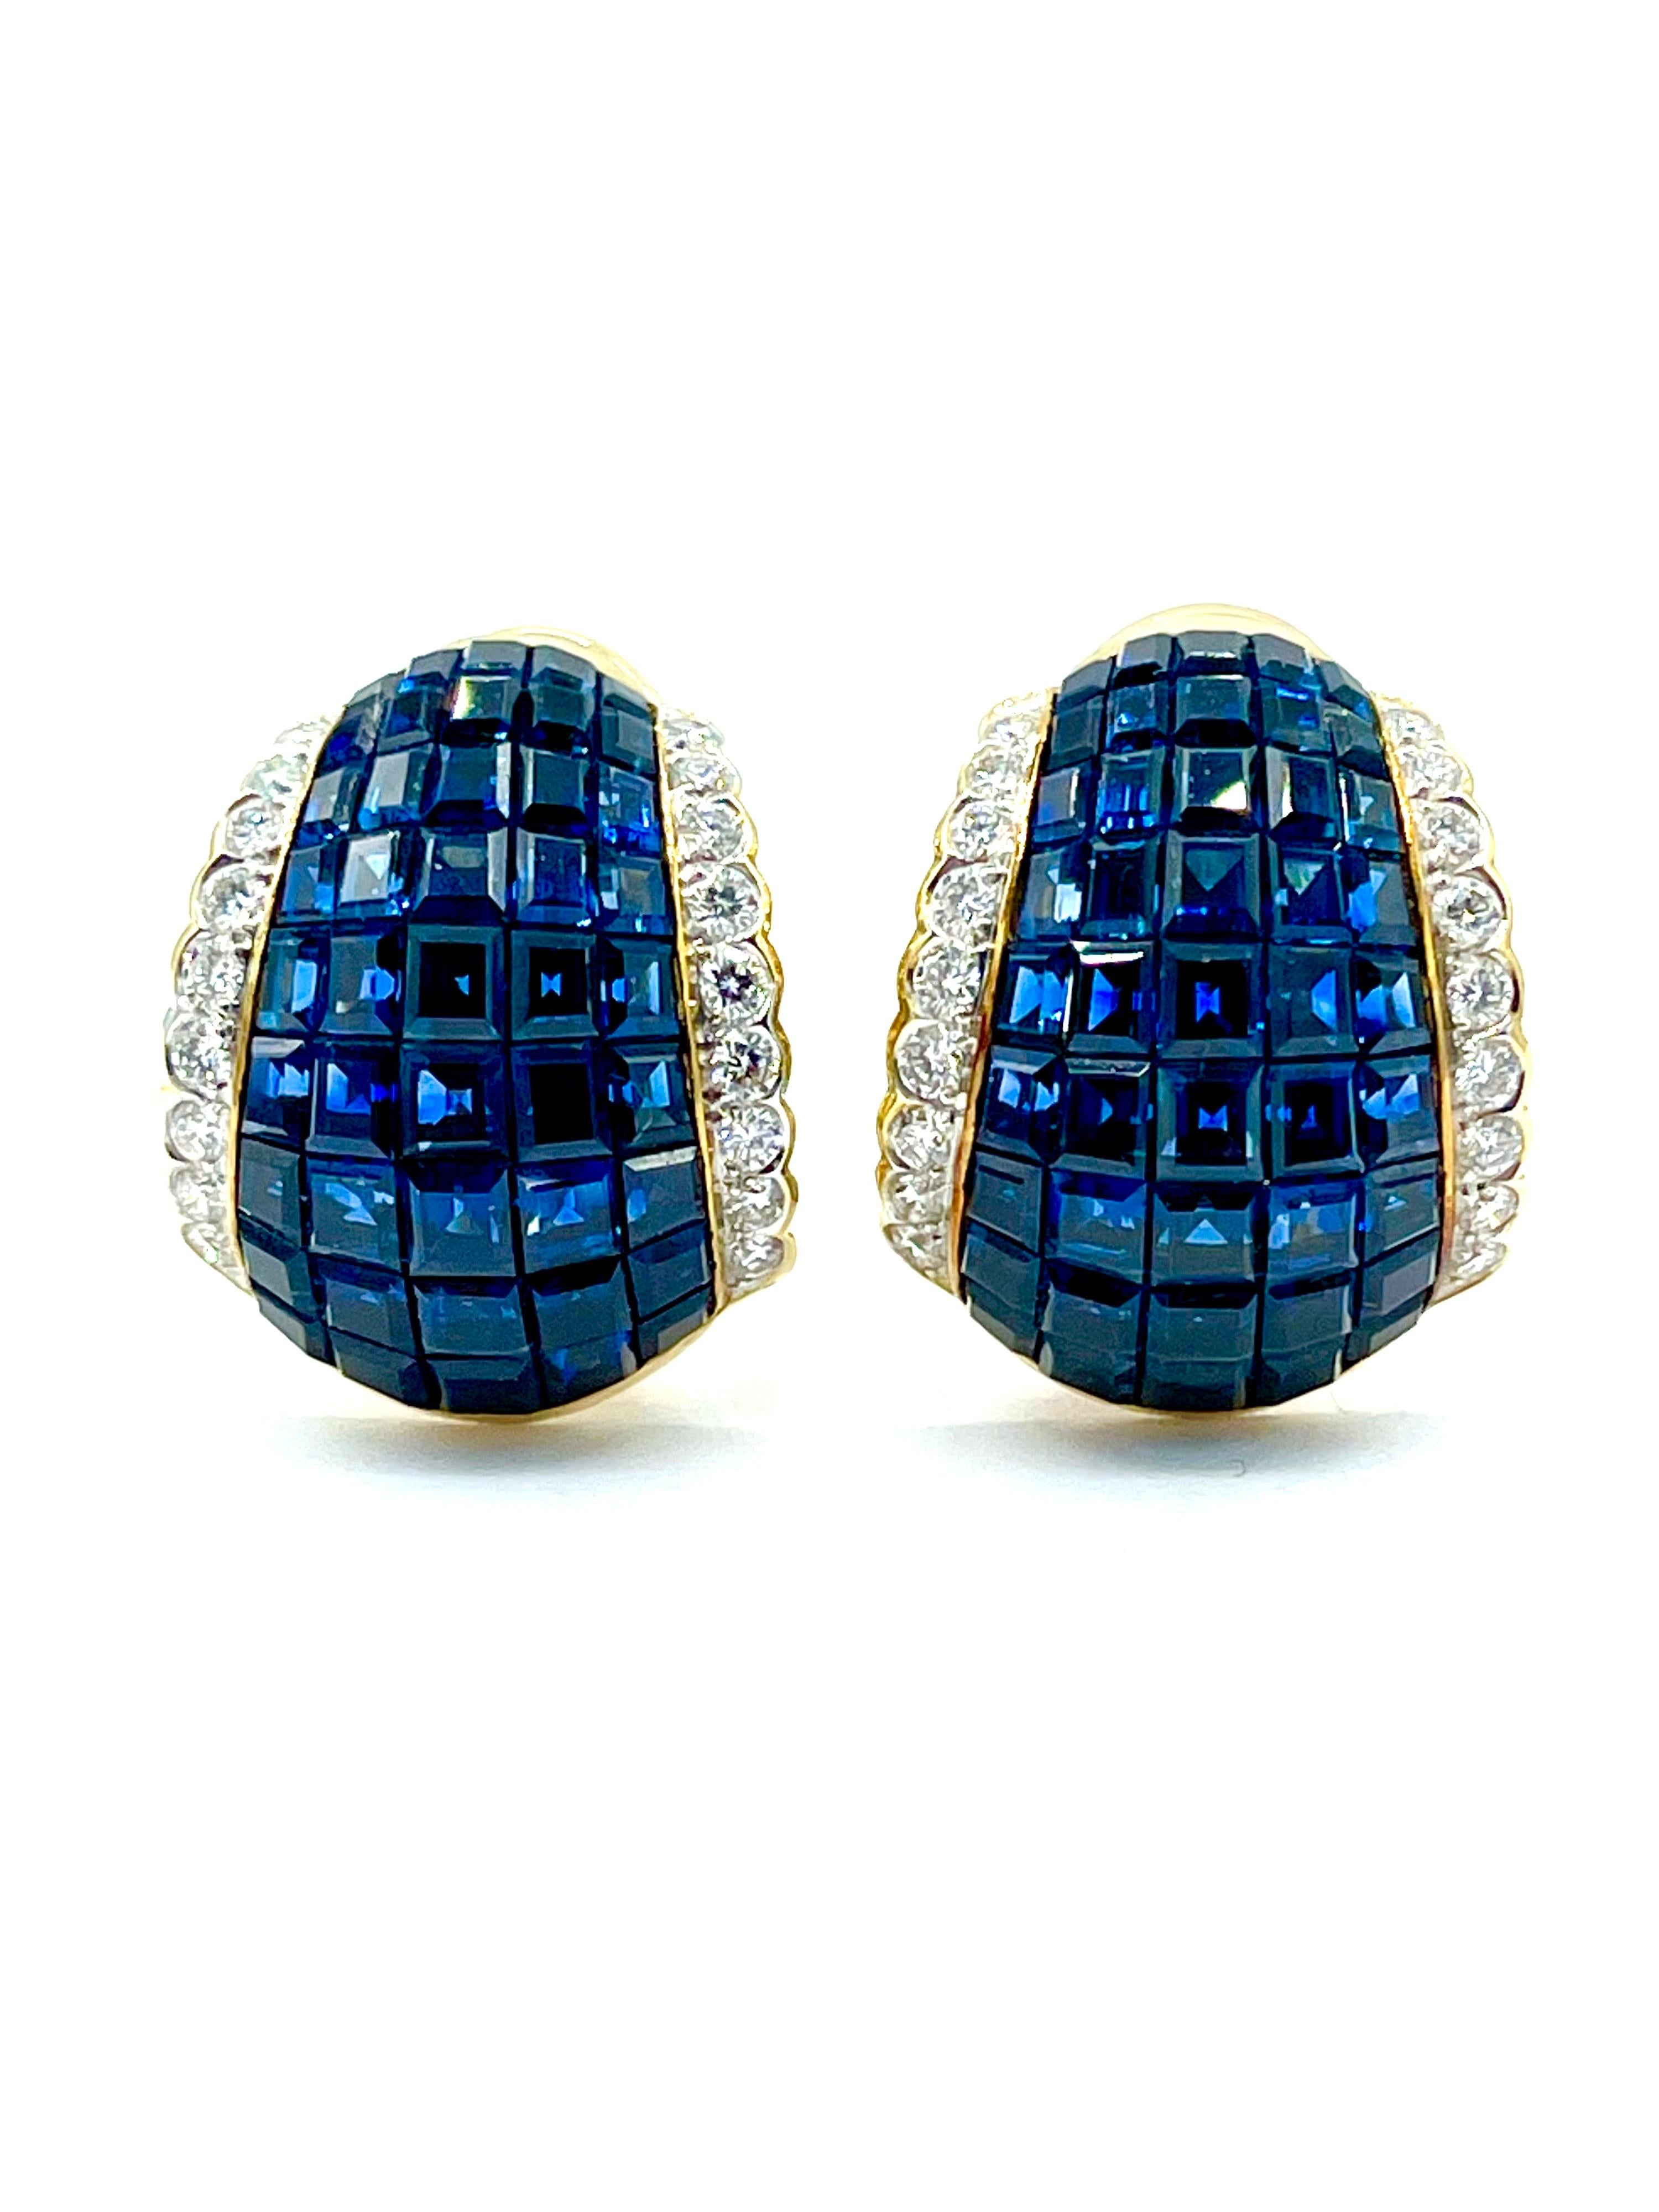 Ein wunderschönes Paar unsichtbar gefasste Saphir- und Diamant-Ohrringe aus 18 Karat Gelbgold.  Die Ohrringe bestehen aus fünf Reihen quadratisch geschliffener Saphire, die zwischen zwei Reihen runder Diamanten im Brillantschliff eingefasst sind. 